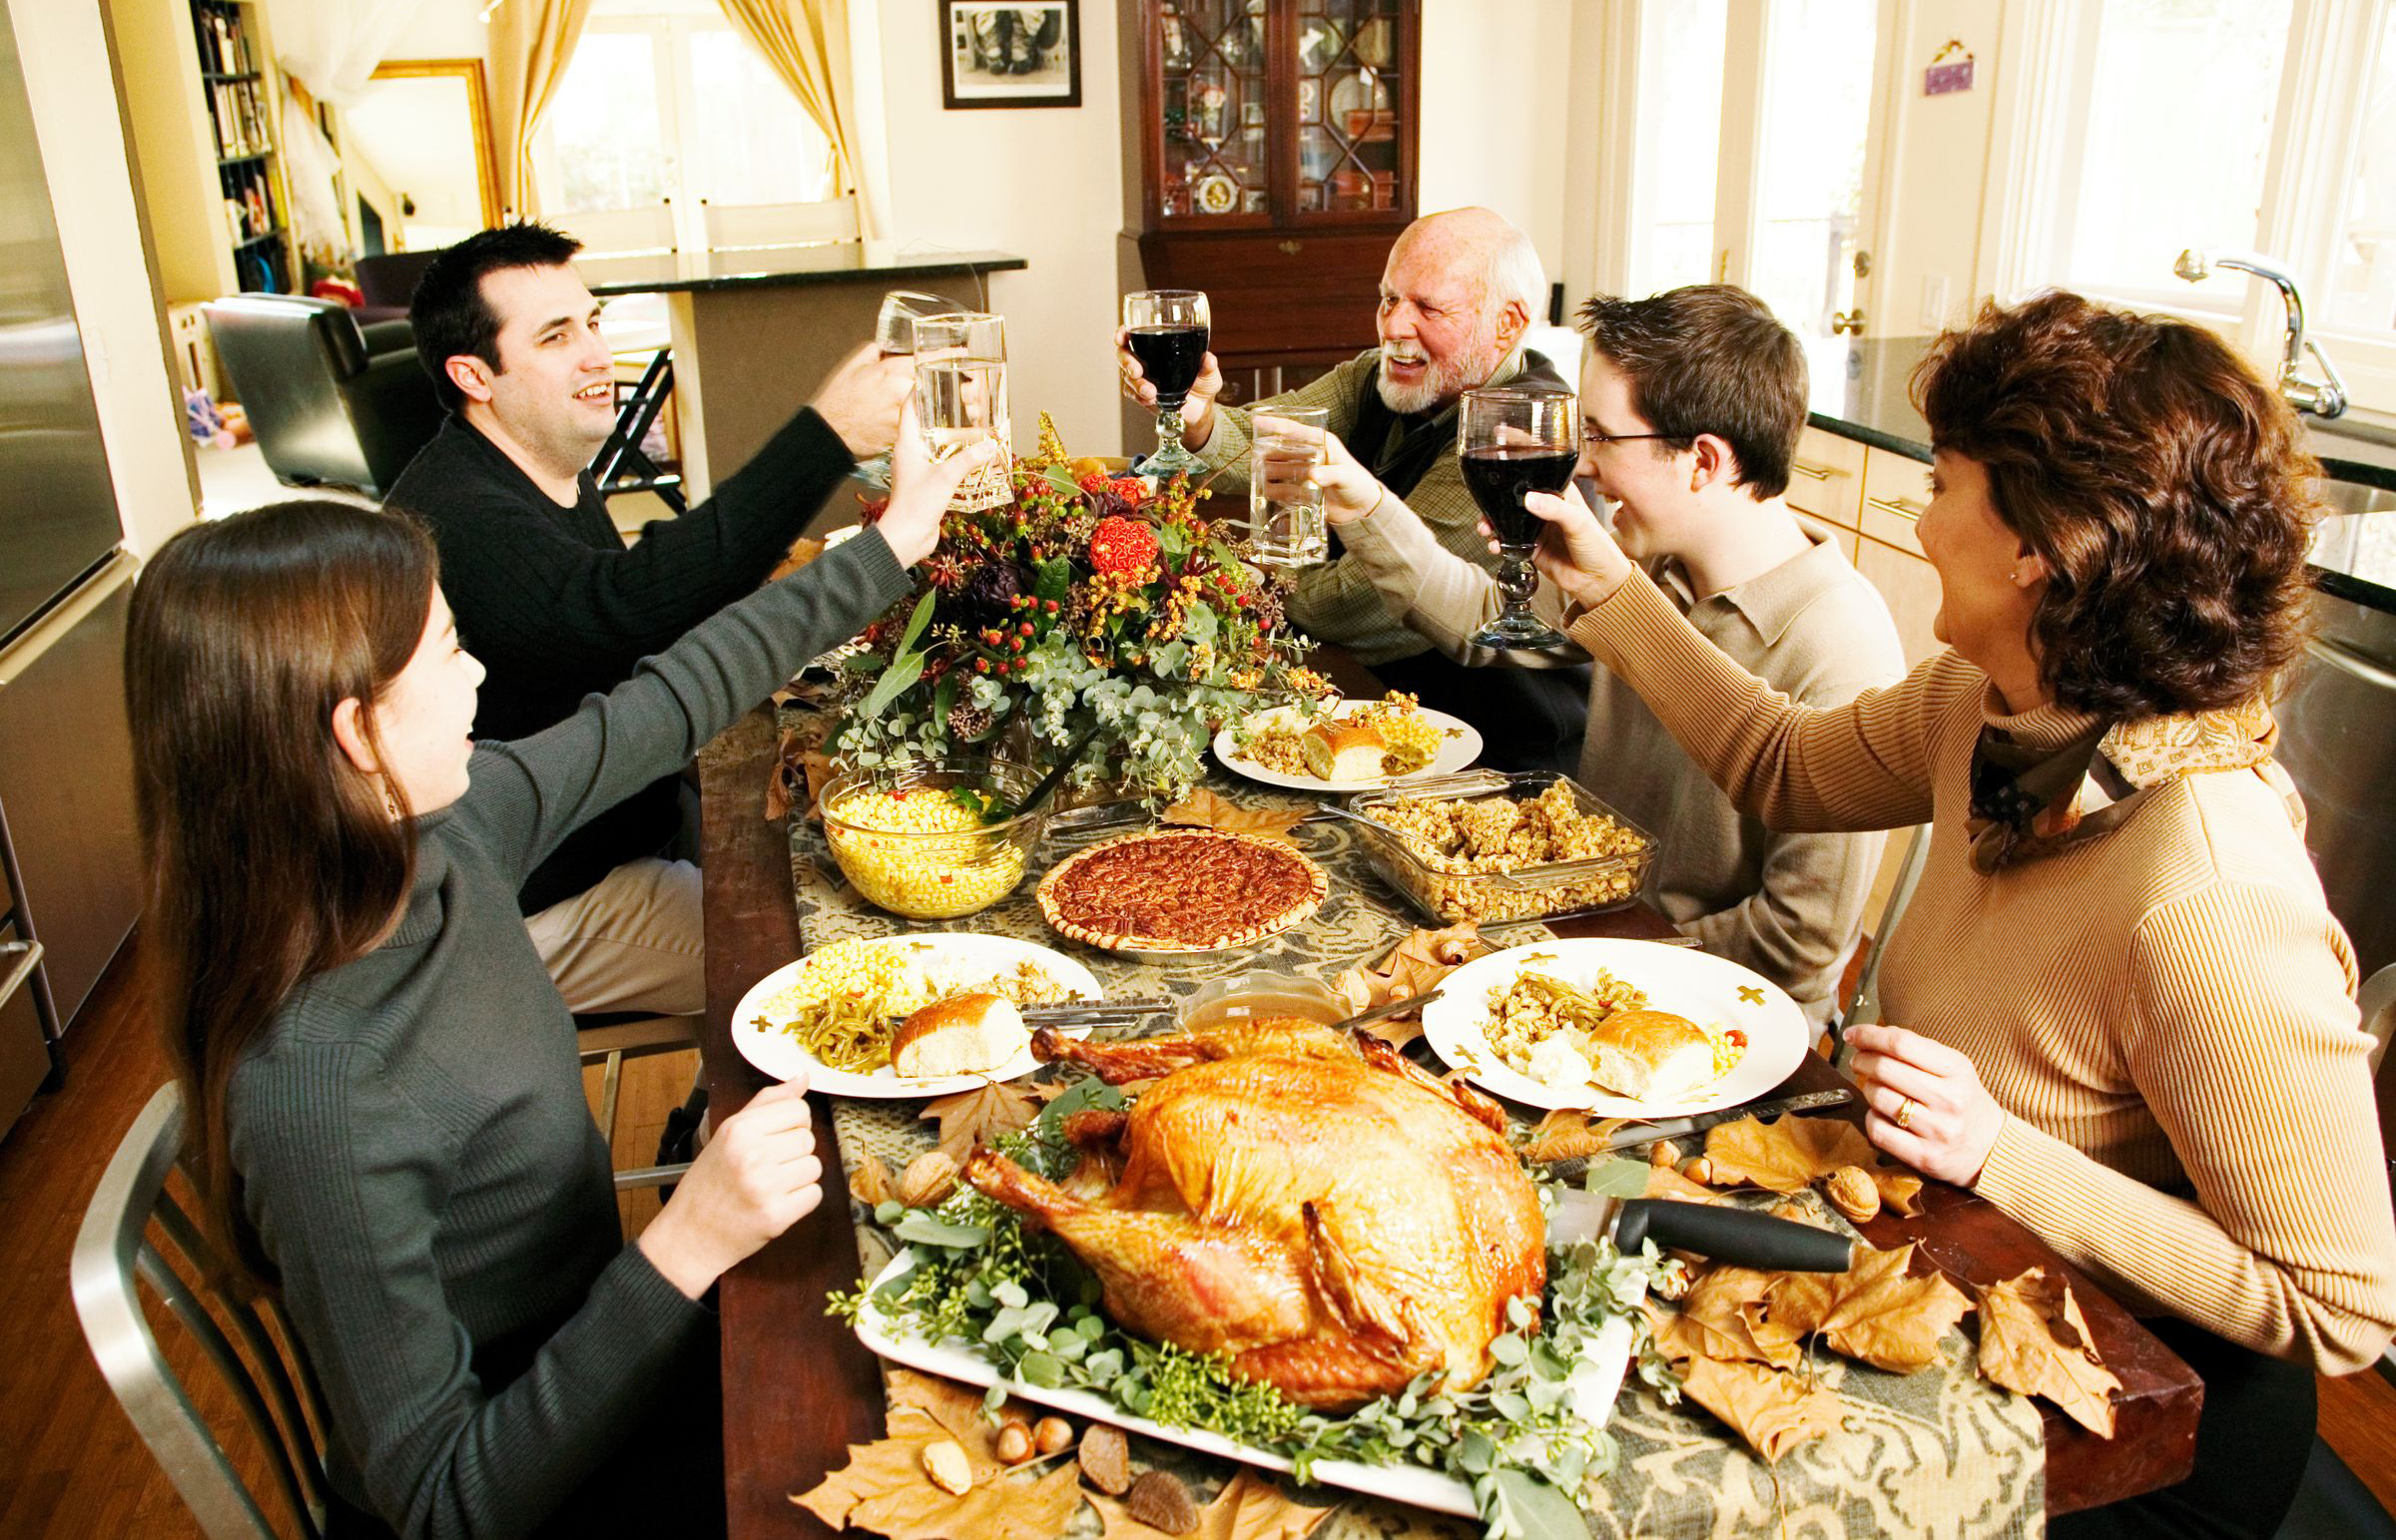 Ужин в 5 часов. Праздничный стол с людьми. Праздничный обед. День Благодарения застолье. Богатый стол с едой.